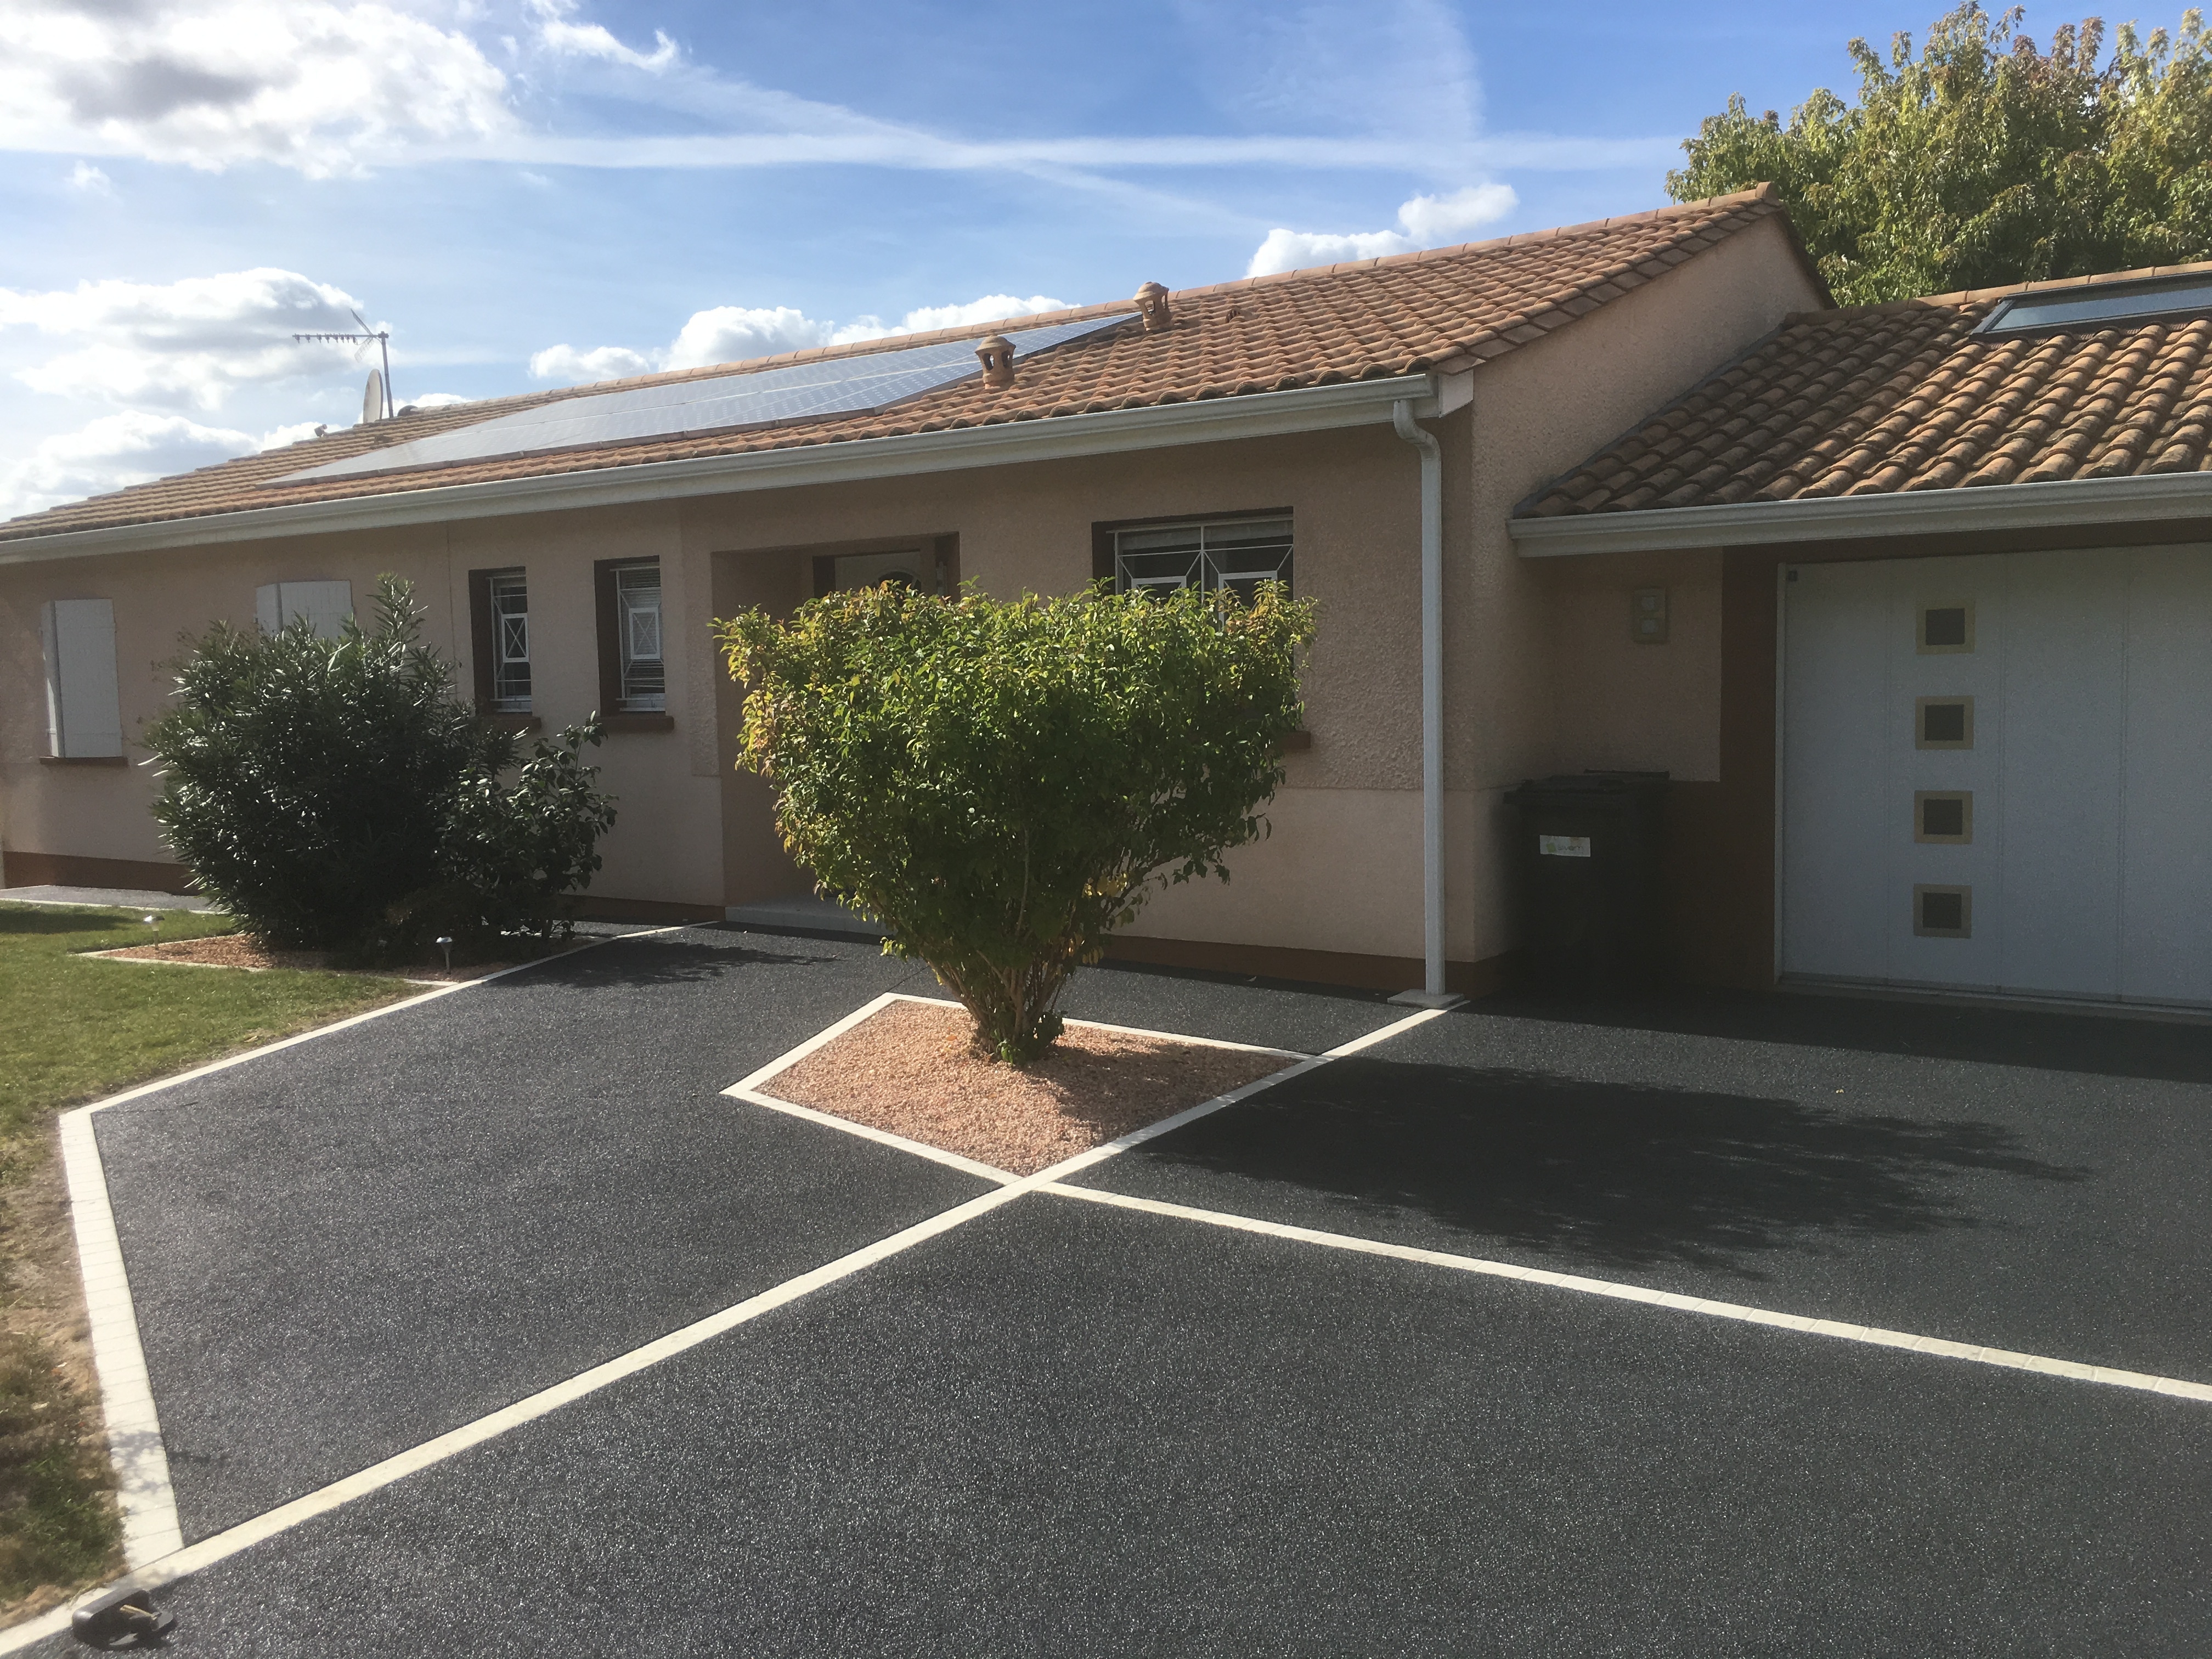 Cration Alle de garage en Nrostar - Entreprise Chauveau - Gironde ralise le 15/02/2019